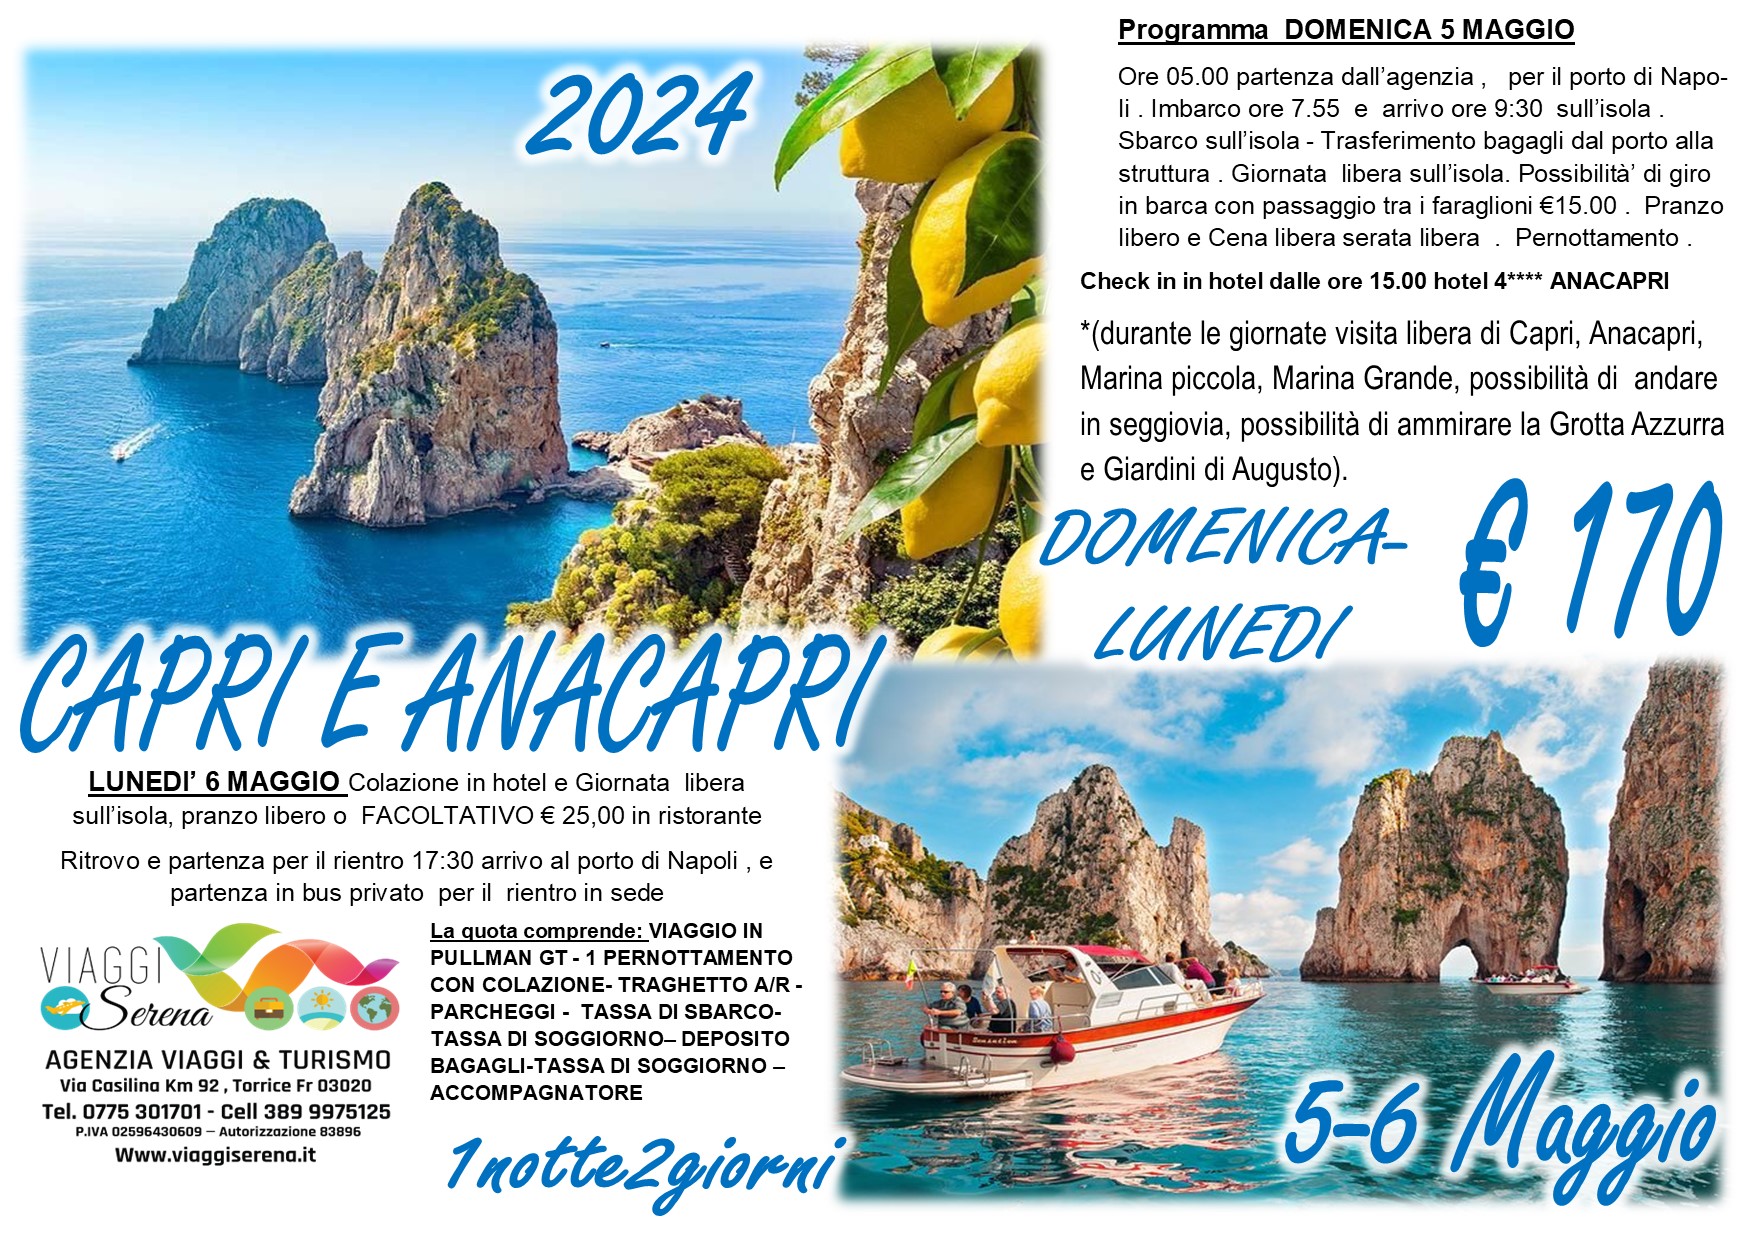 Viaggi di gruppo: Capri e Anacapri 5-6 Maggio €170 “Domenica & Lunedi'”